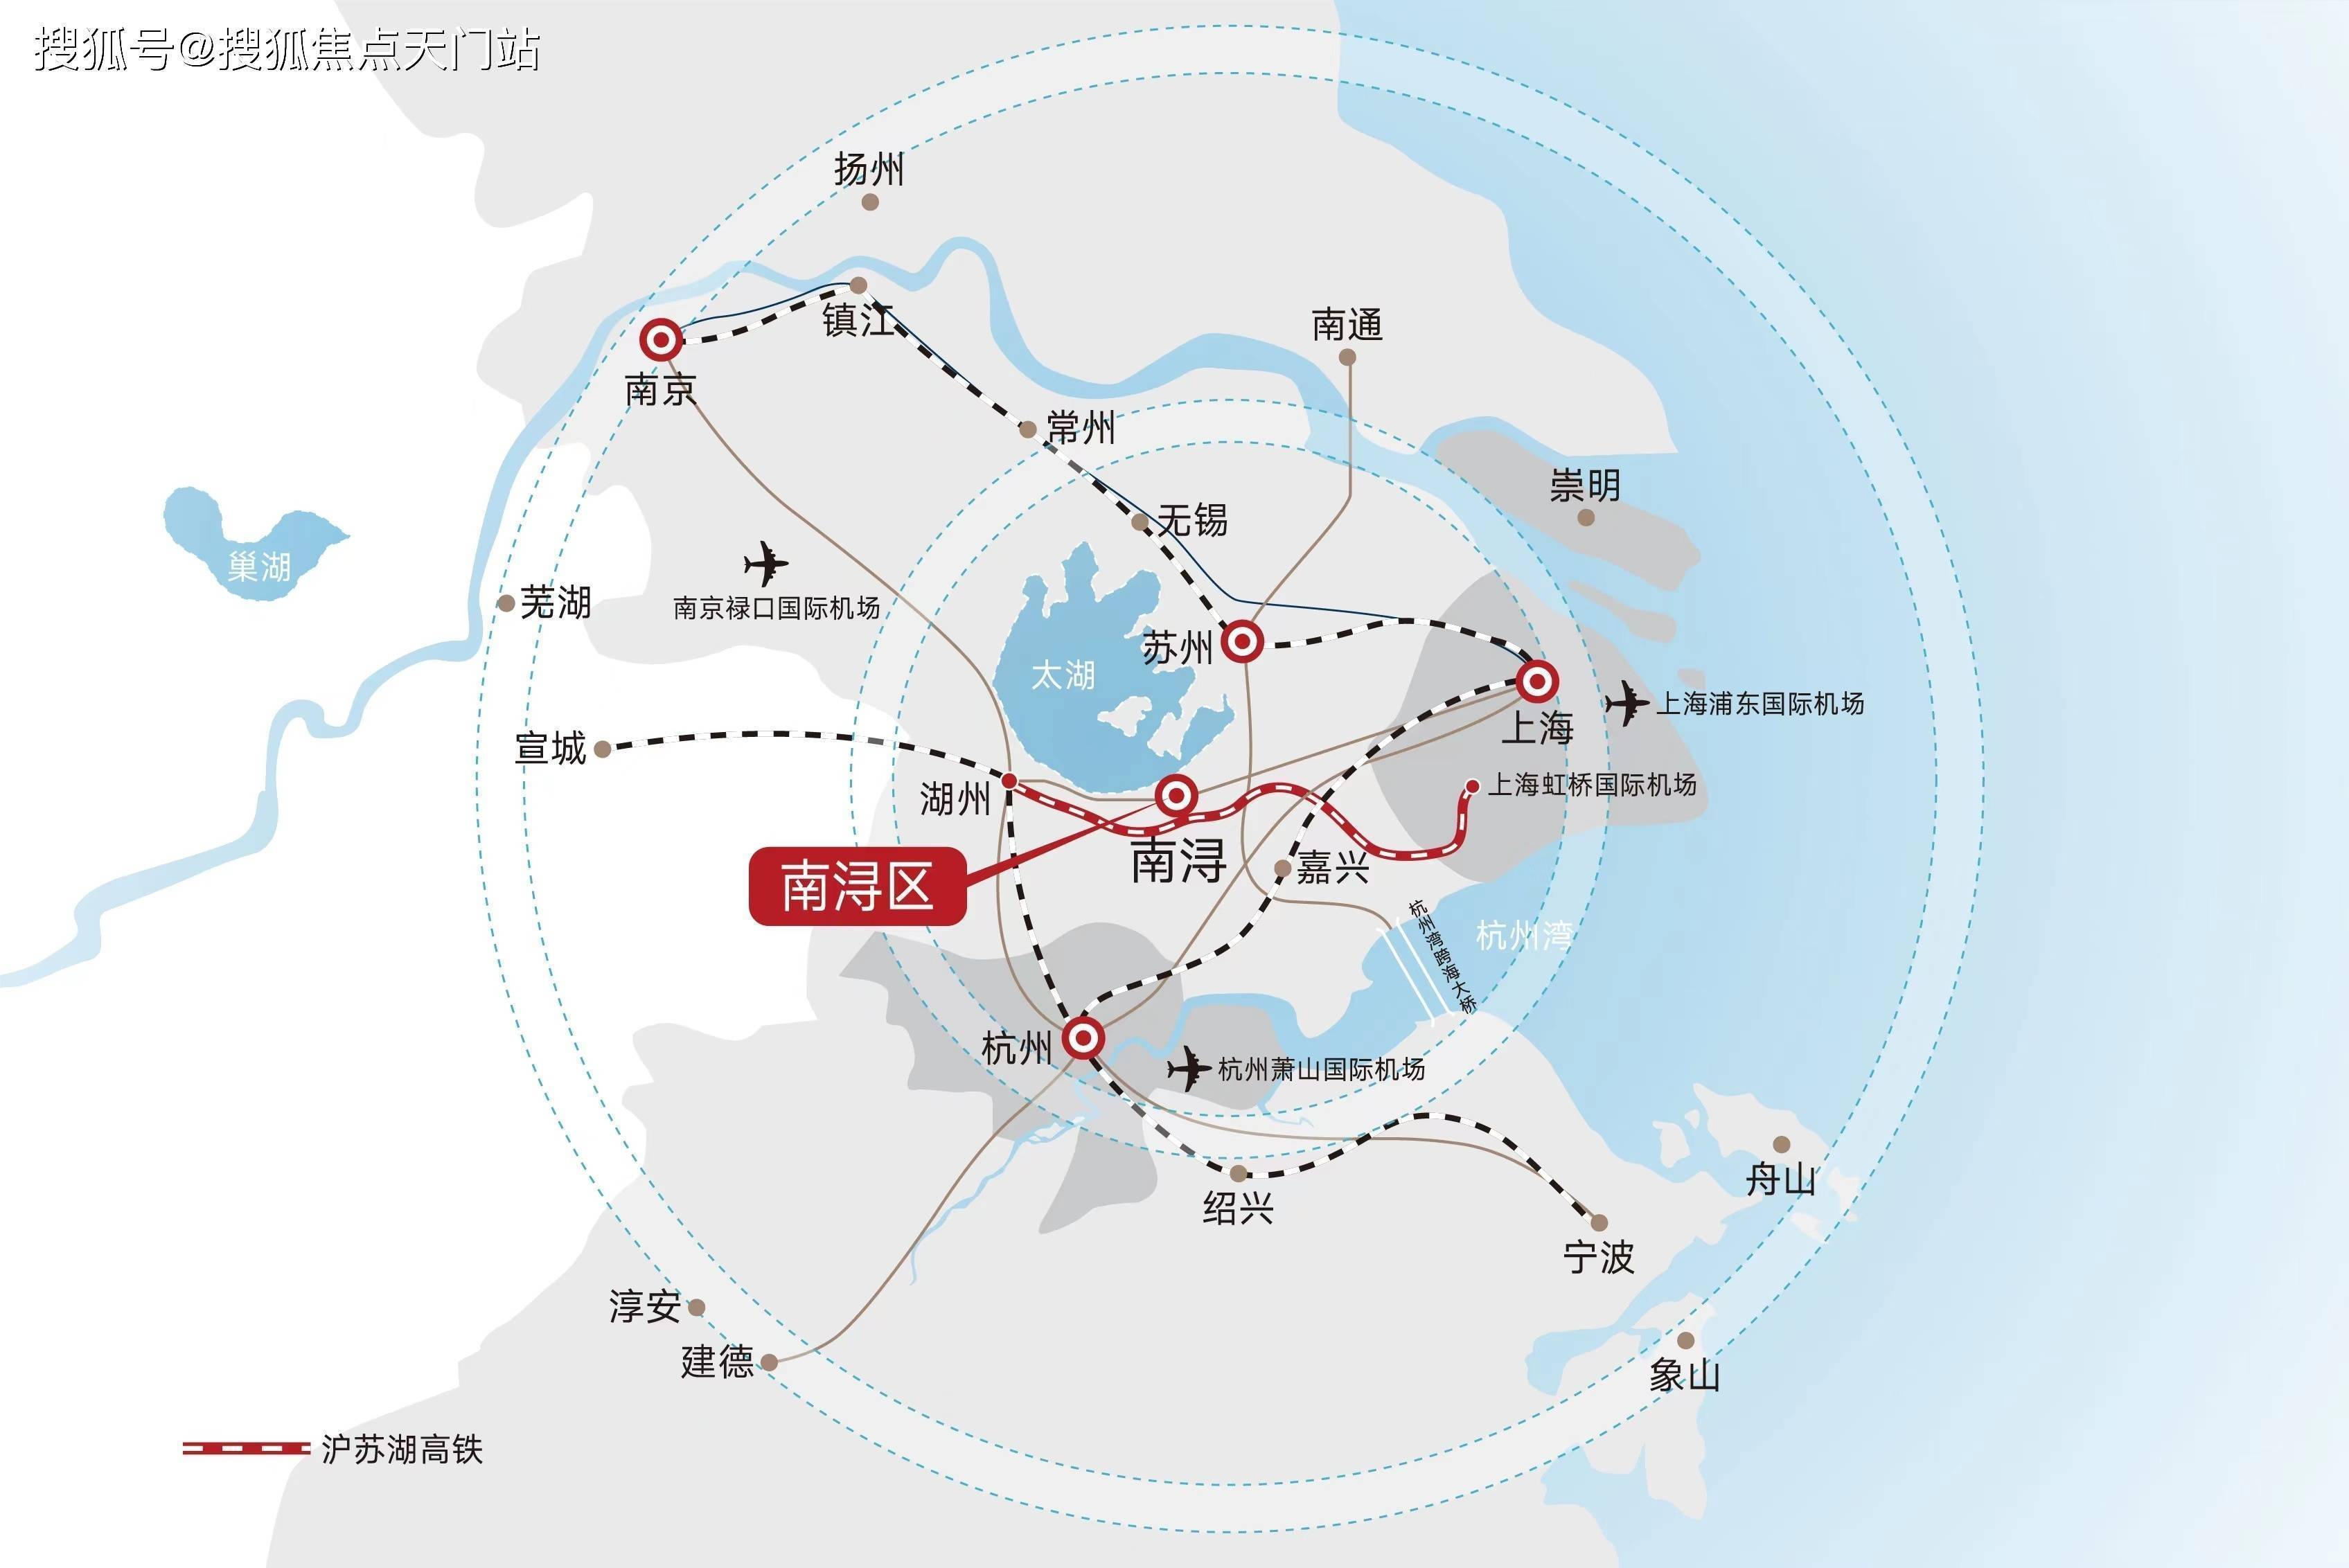 自长三角一体化上升为国家战略,南浔快速融入上海1 10同城化都市圈